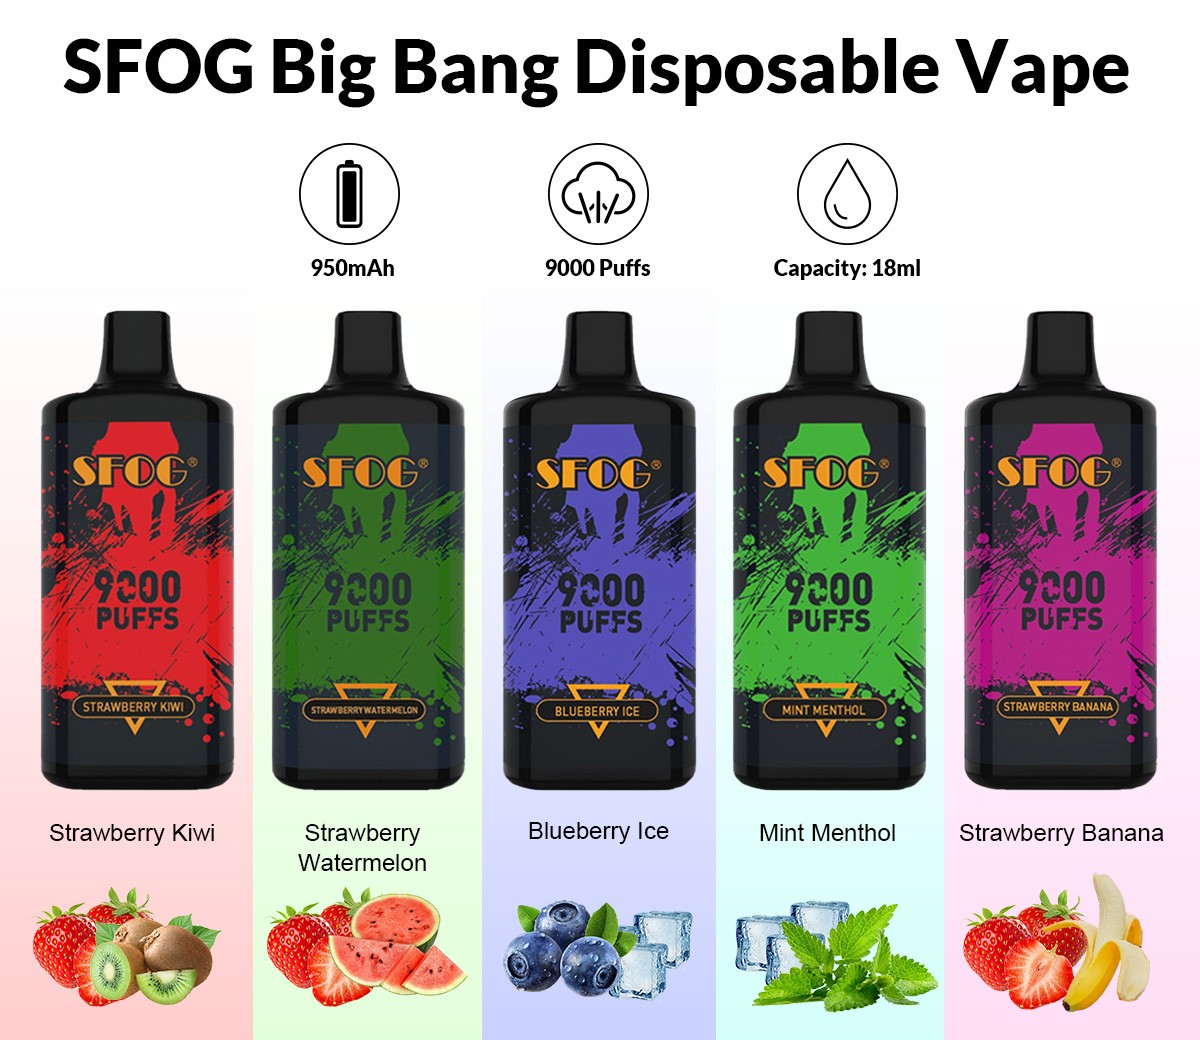 SFOG Big Bang Disposable Vape